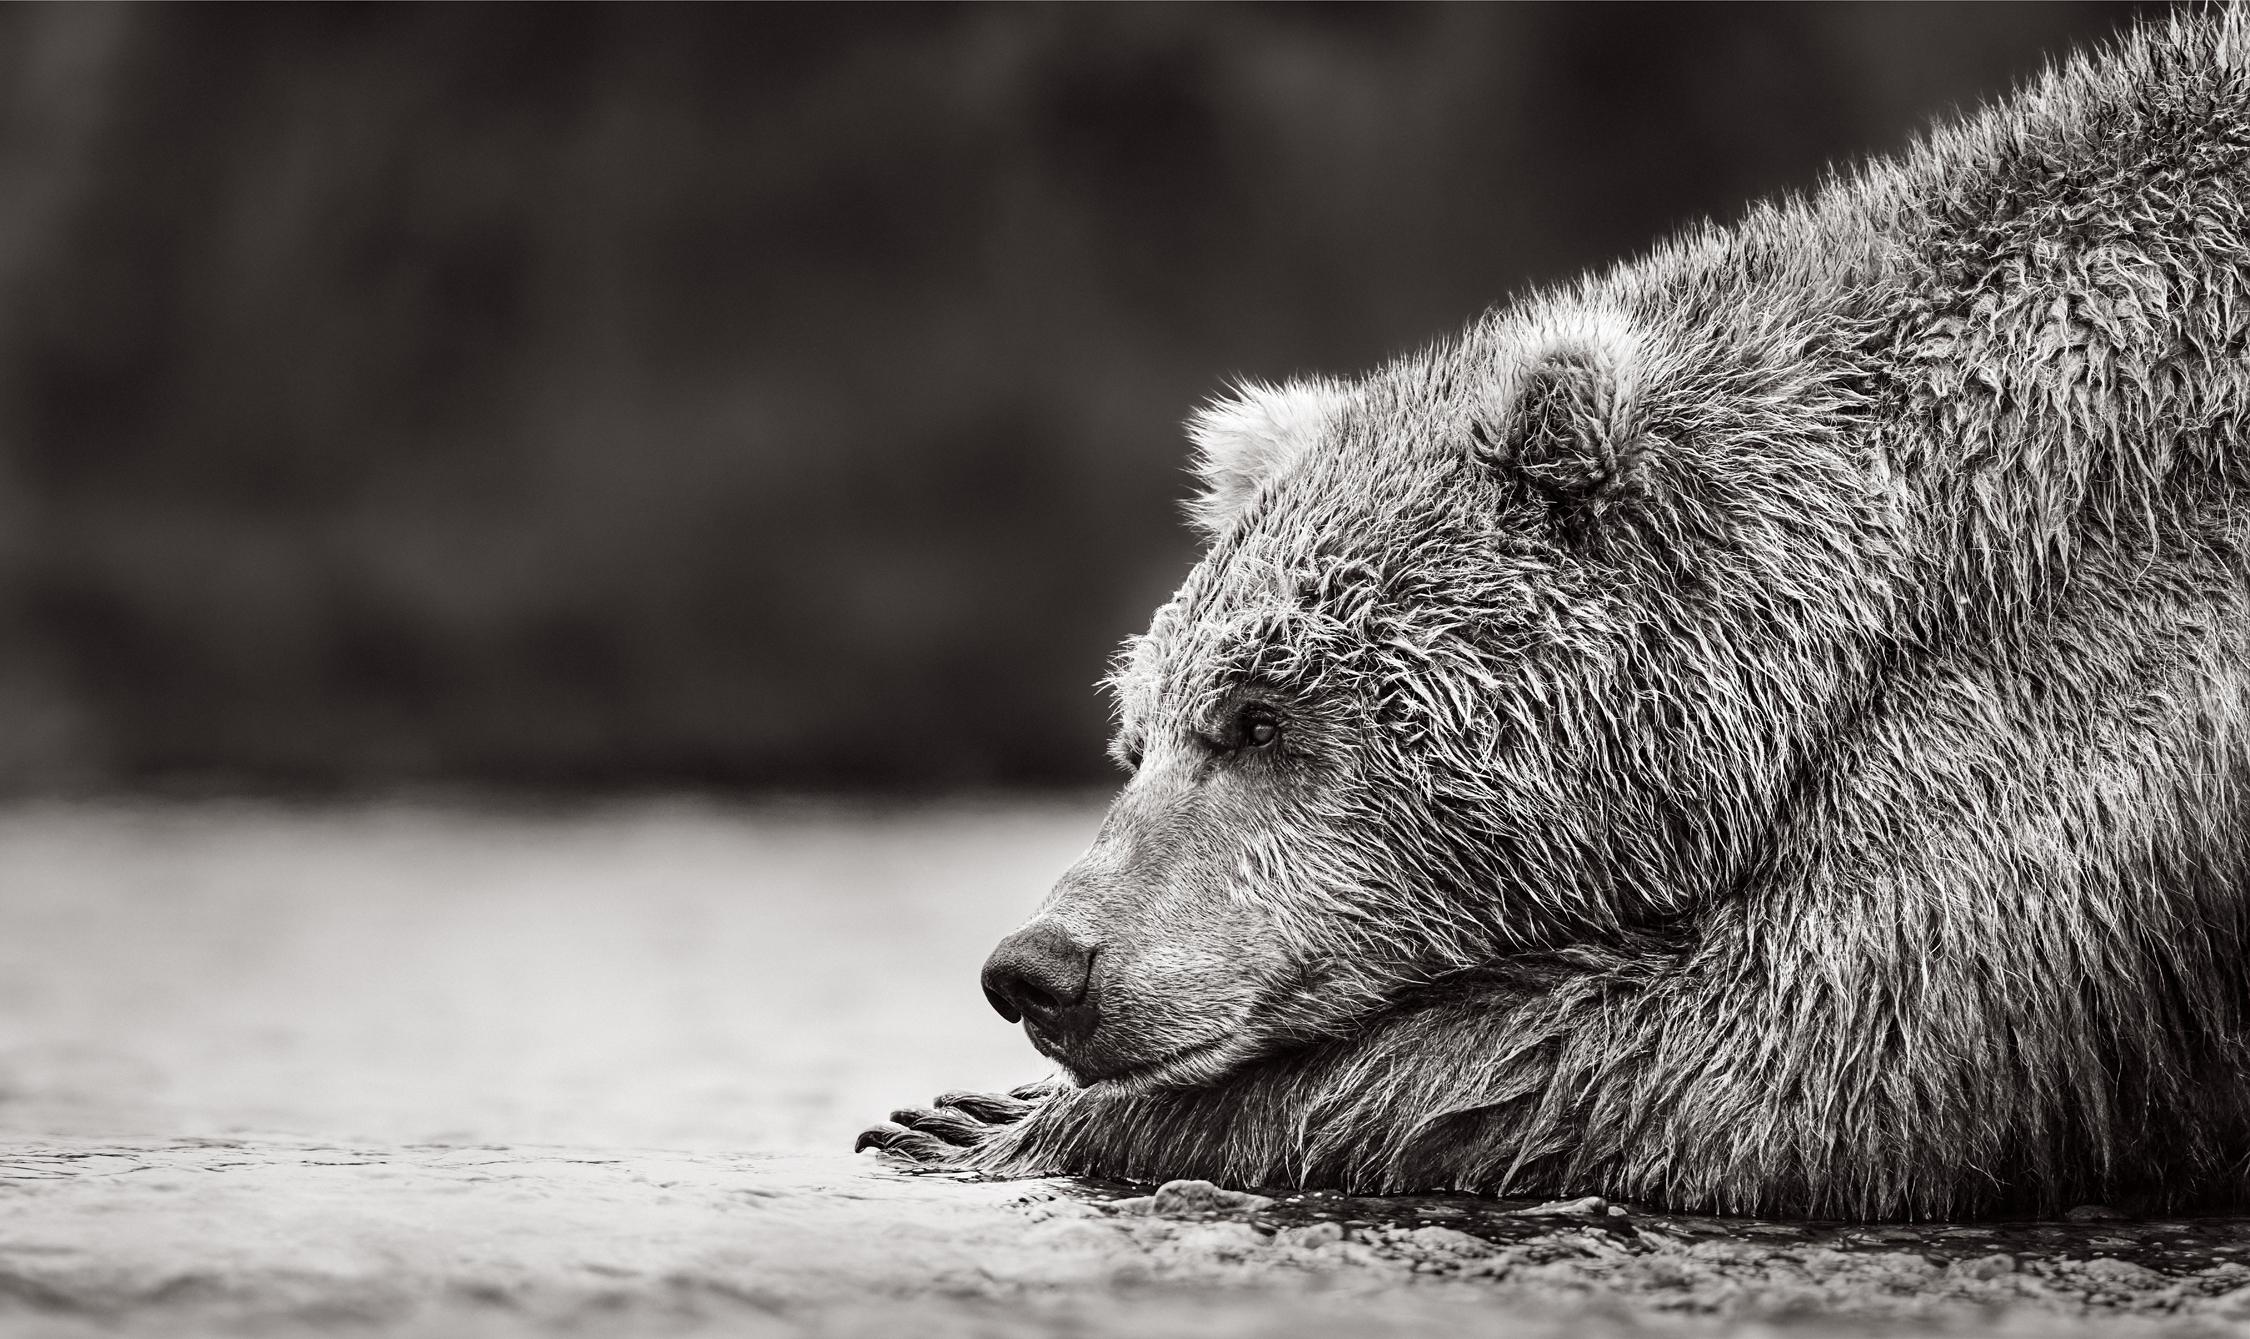 Drew Doggett Black and White Photograph – Brauner Bär ruht auf seinen Vorderpfoten